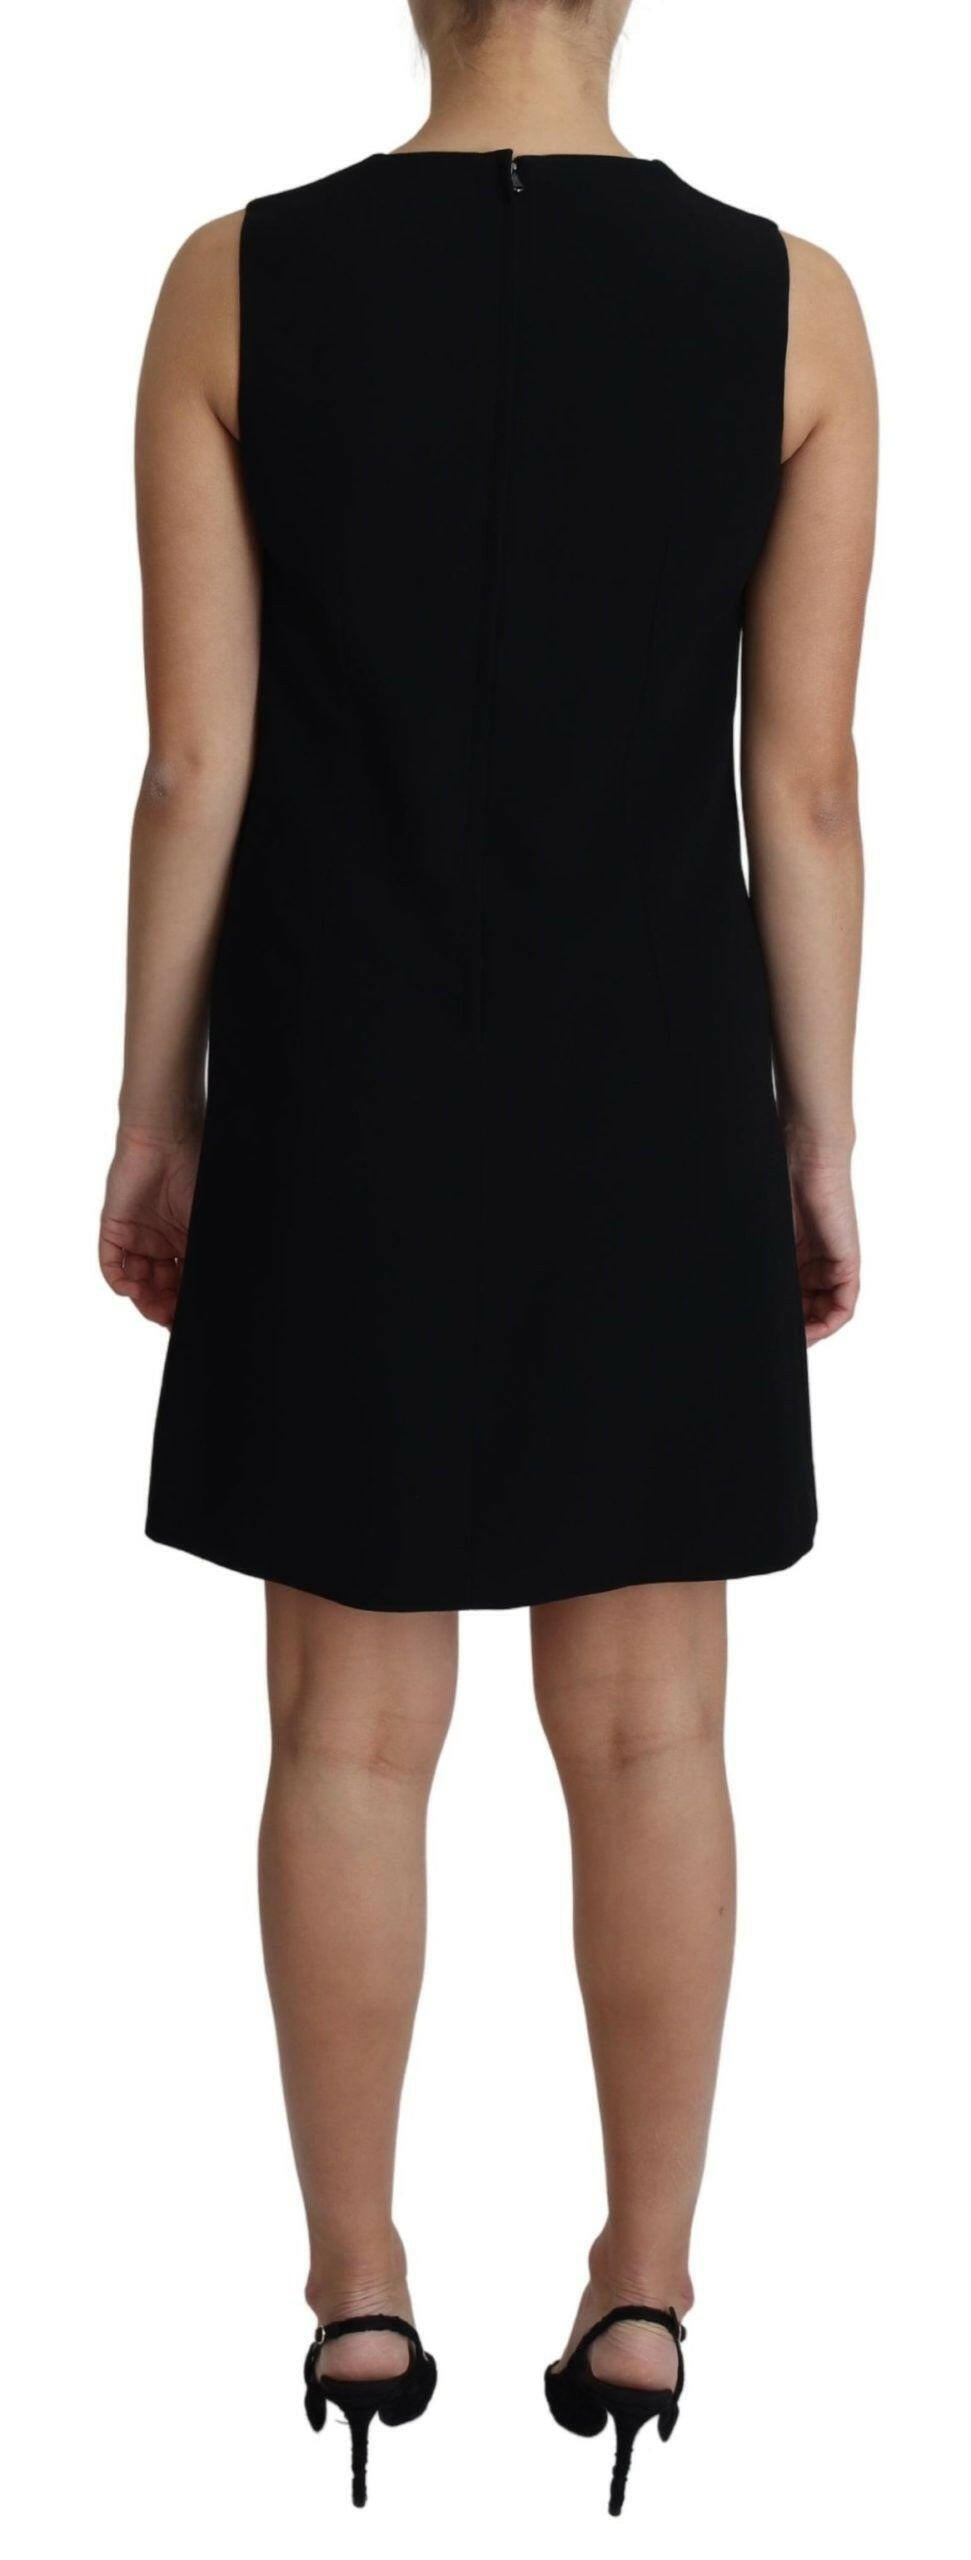 Dolce & Gabbana Black Viscose Stretch A-line Shift Mini Dress - GENUINE AUTHENTIC BRAND LLC  